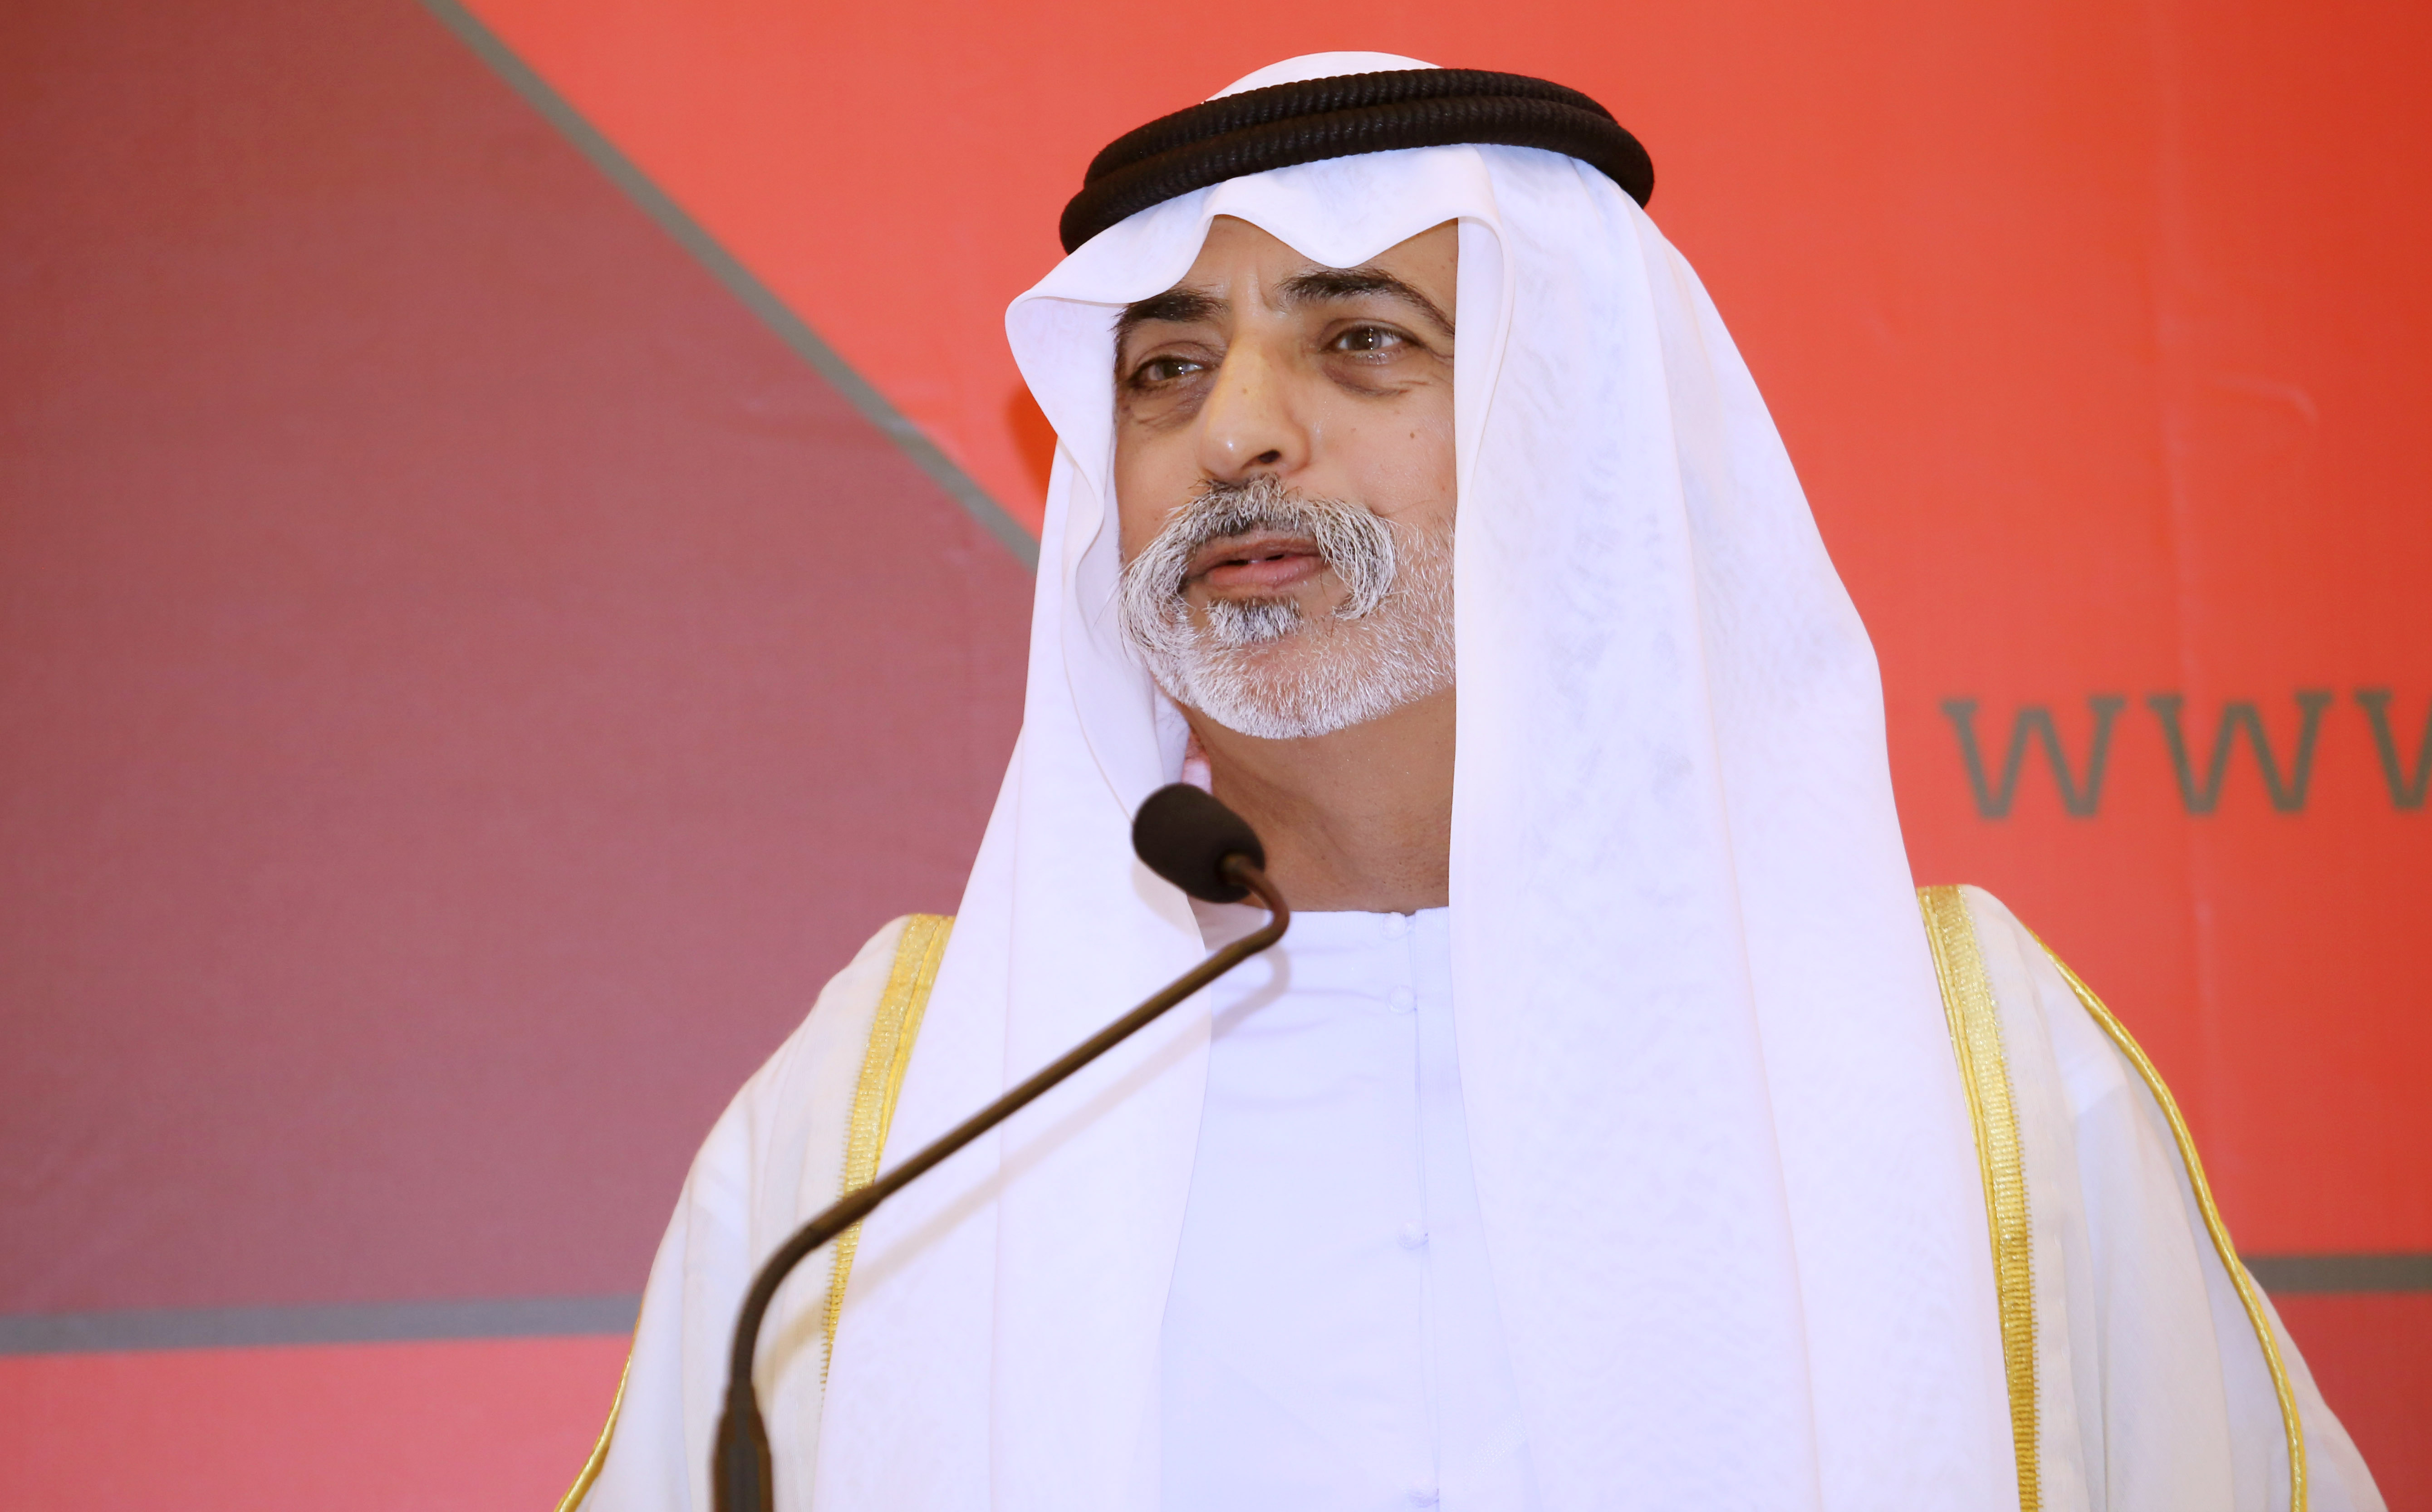 Sheikh Nahyan bin Mubarak Al Nahyan